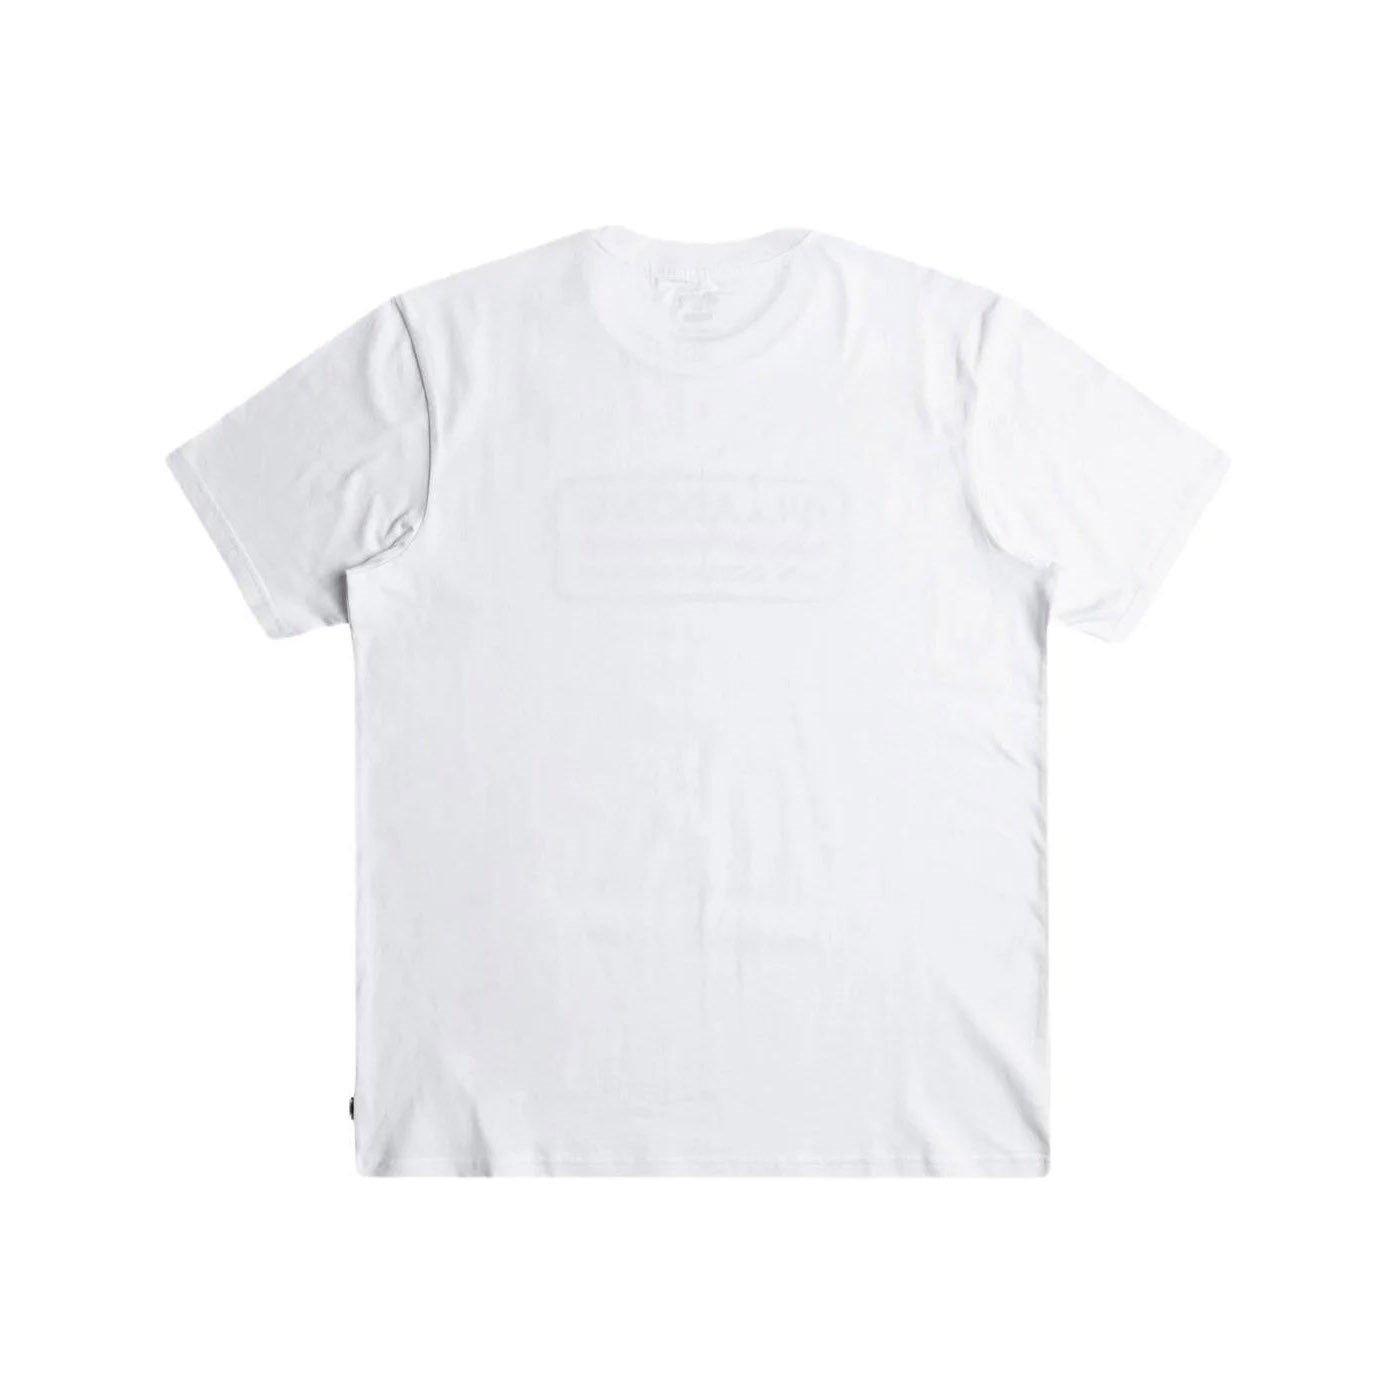 Billabong Trademark Tees Erkek T-shirt Beyaz